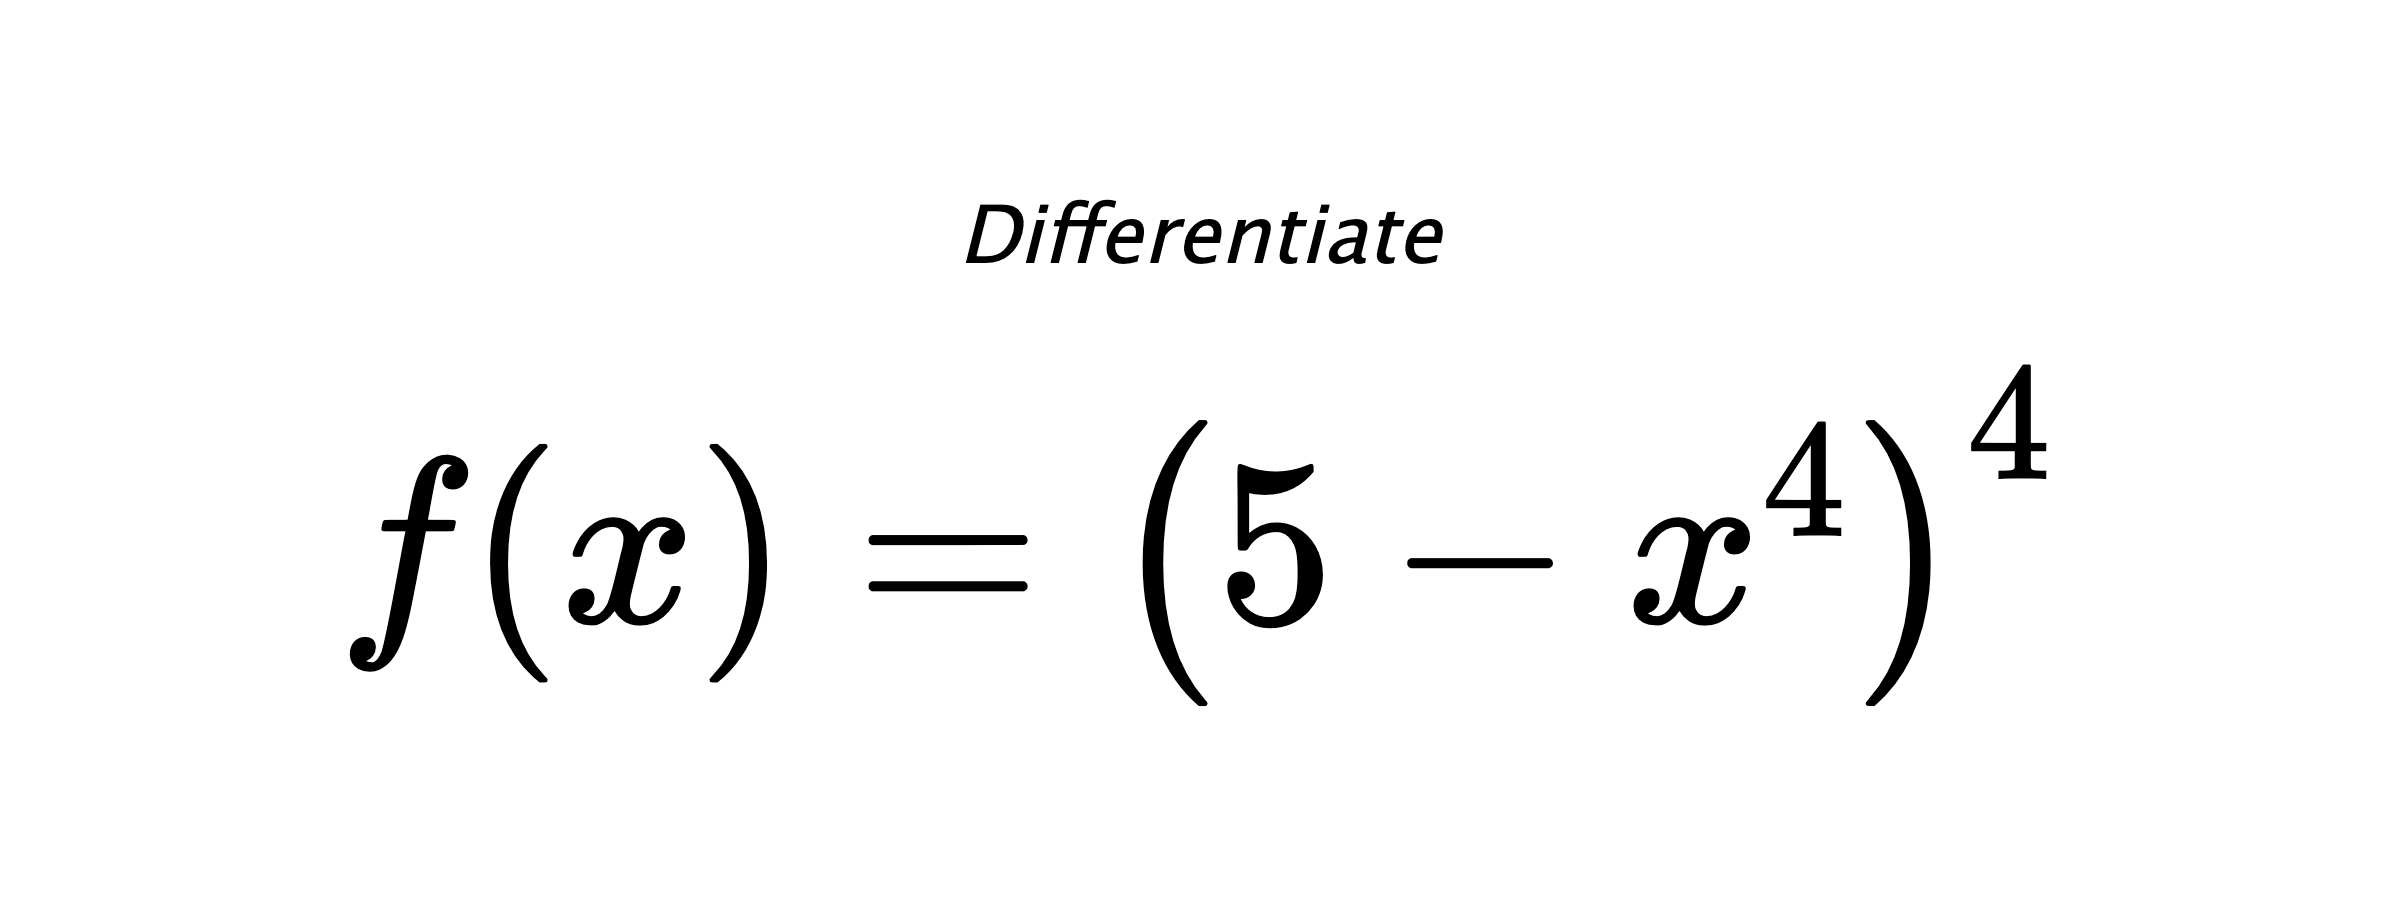 Differentiate $ f(x) = \left(5 - x^{4}\right)^{4} $